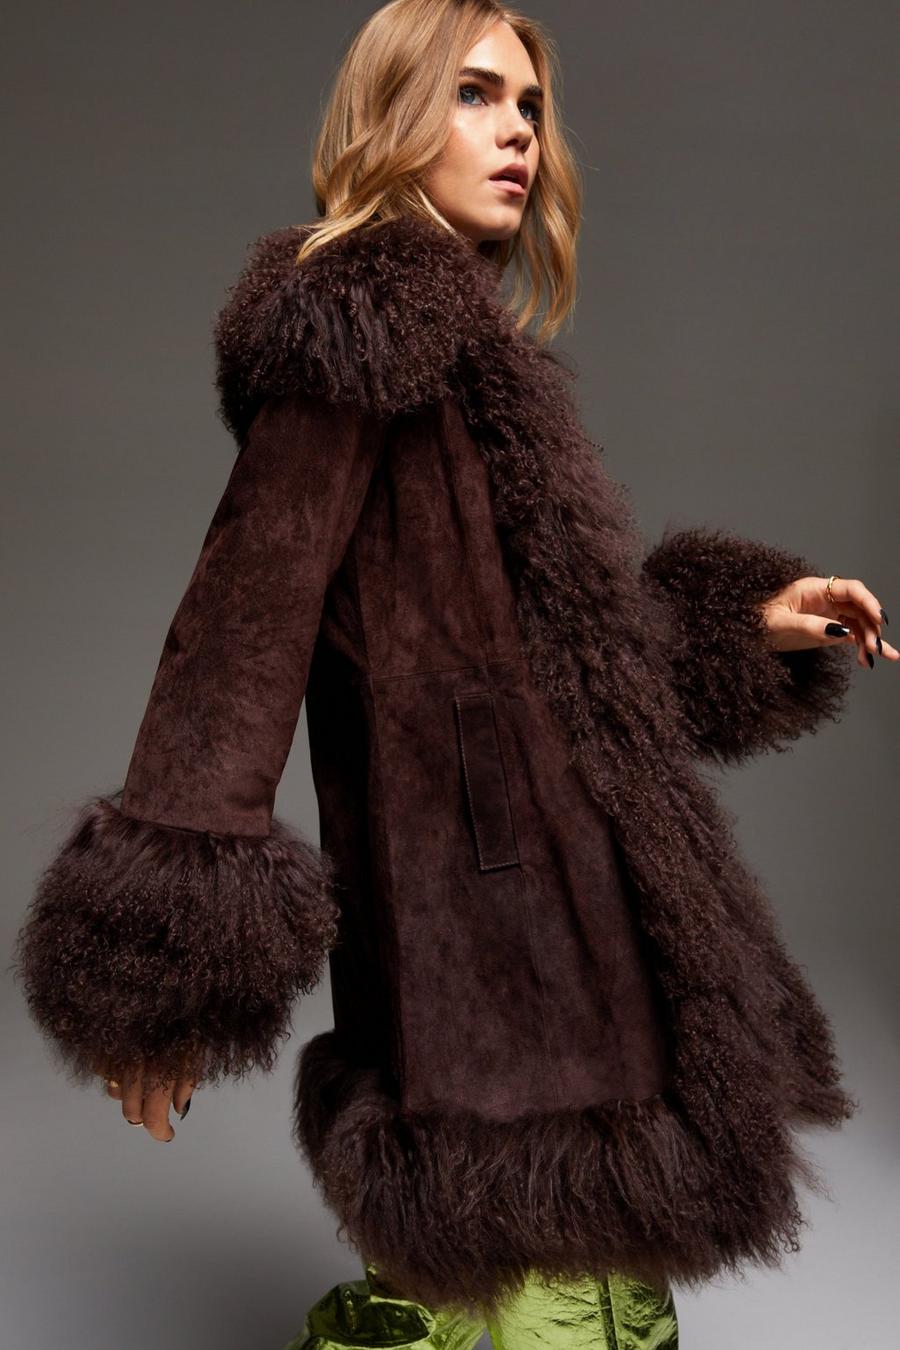 Women's Mid Length Faux Fur Coat in Biscuit Cream Afghan Fur